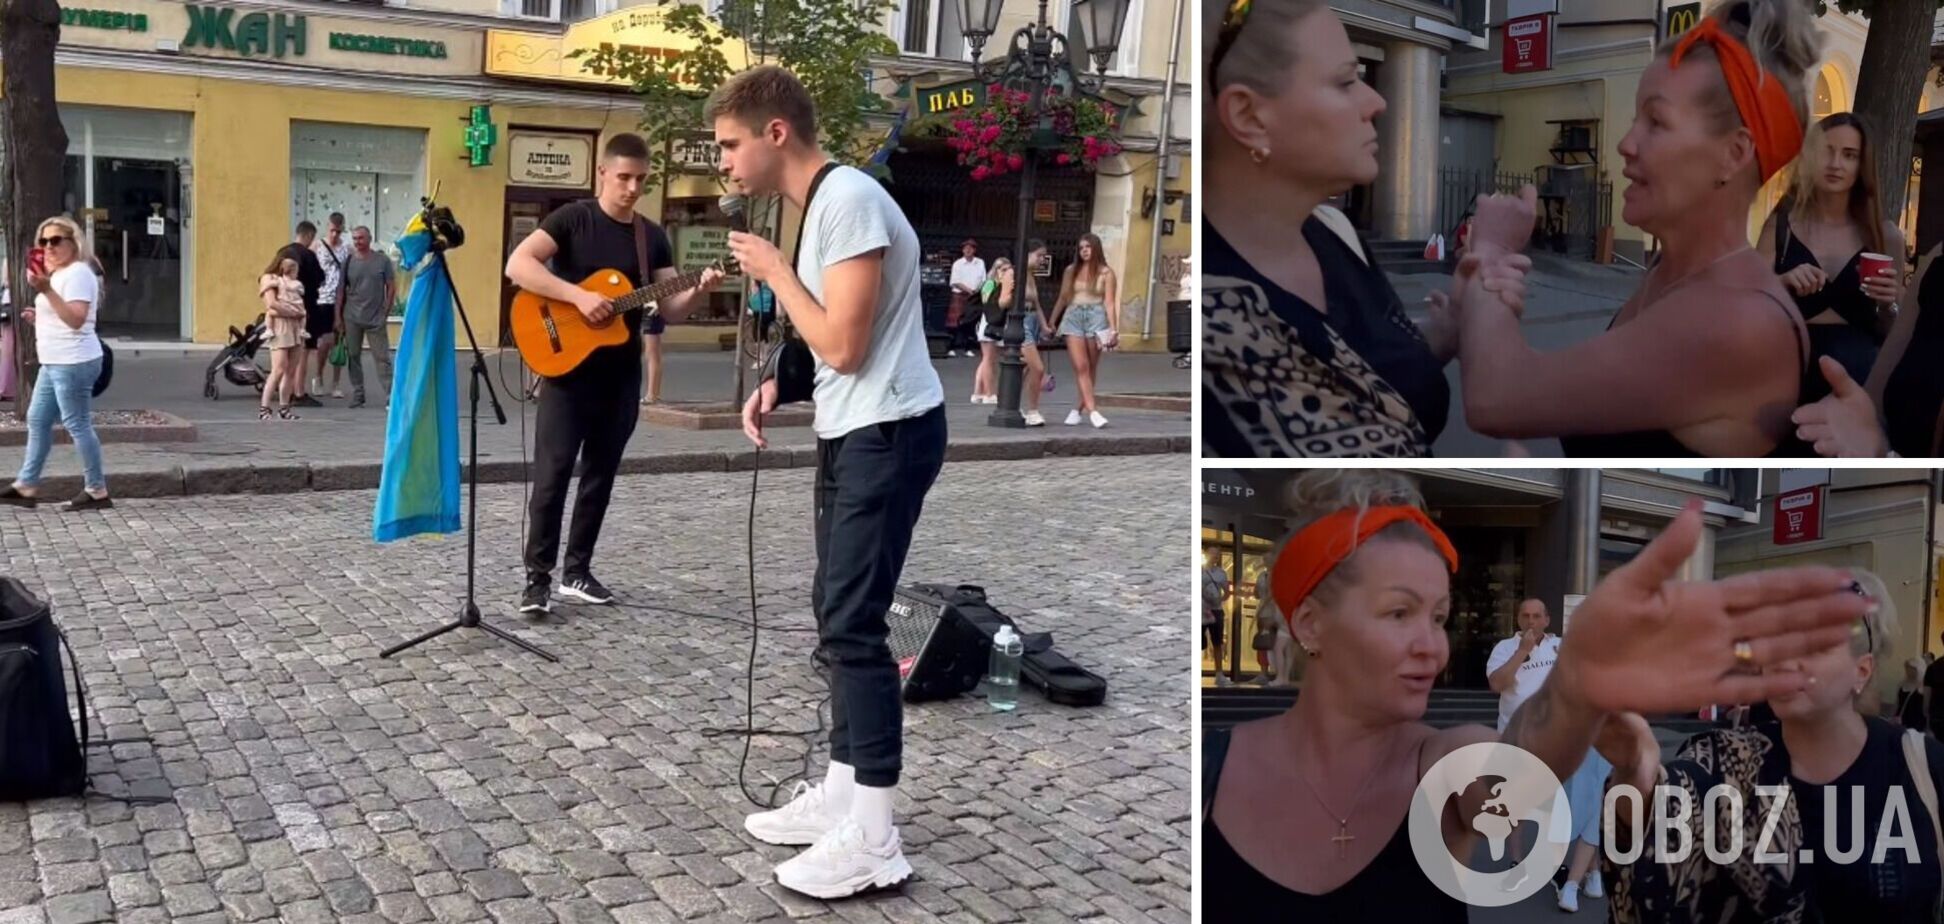 'Понаєхалі тут': в Одесі жінка накинулася на вуличних музикантів через українську мову. Відео 